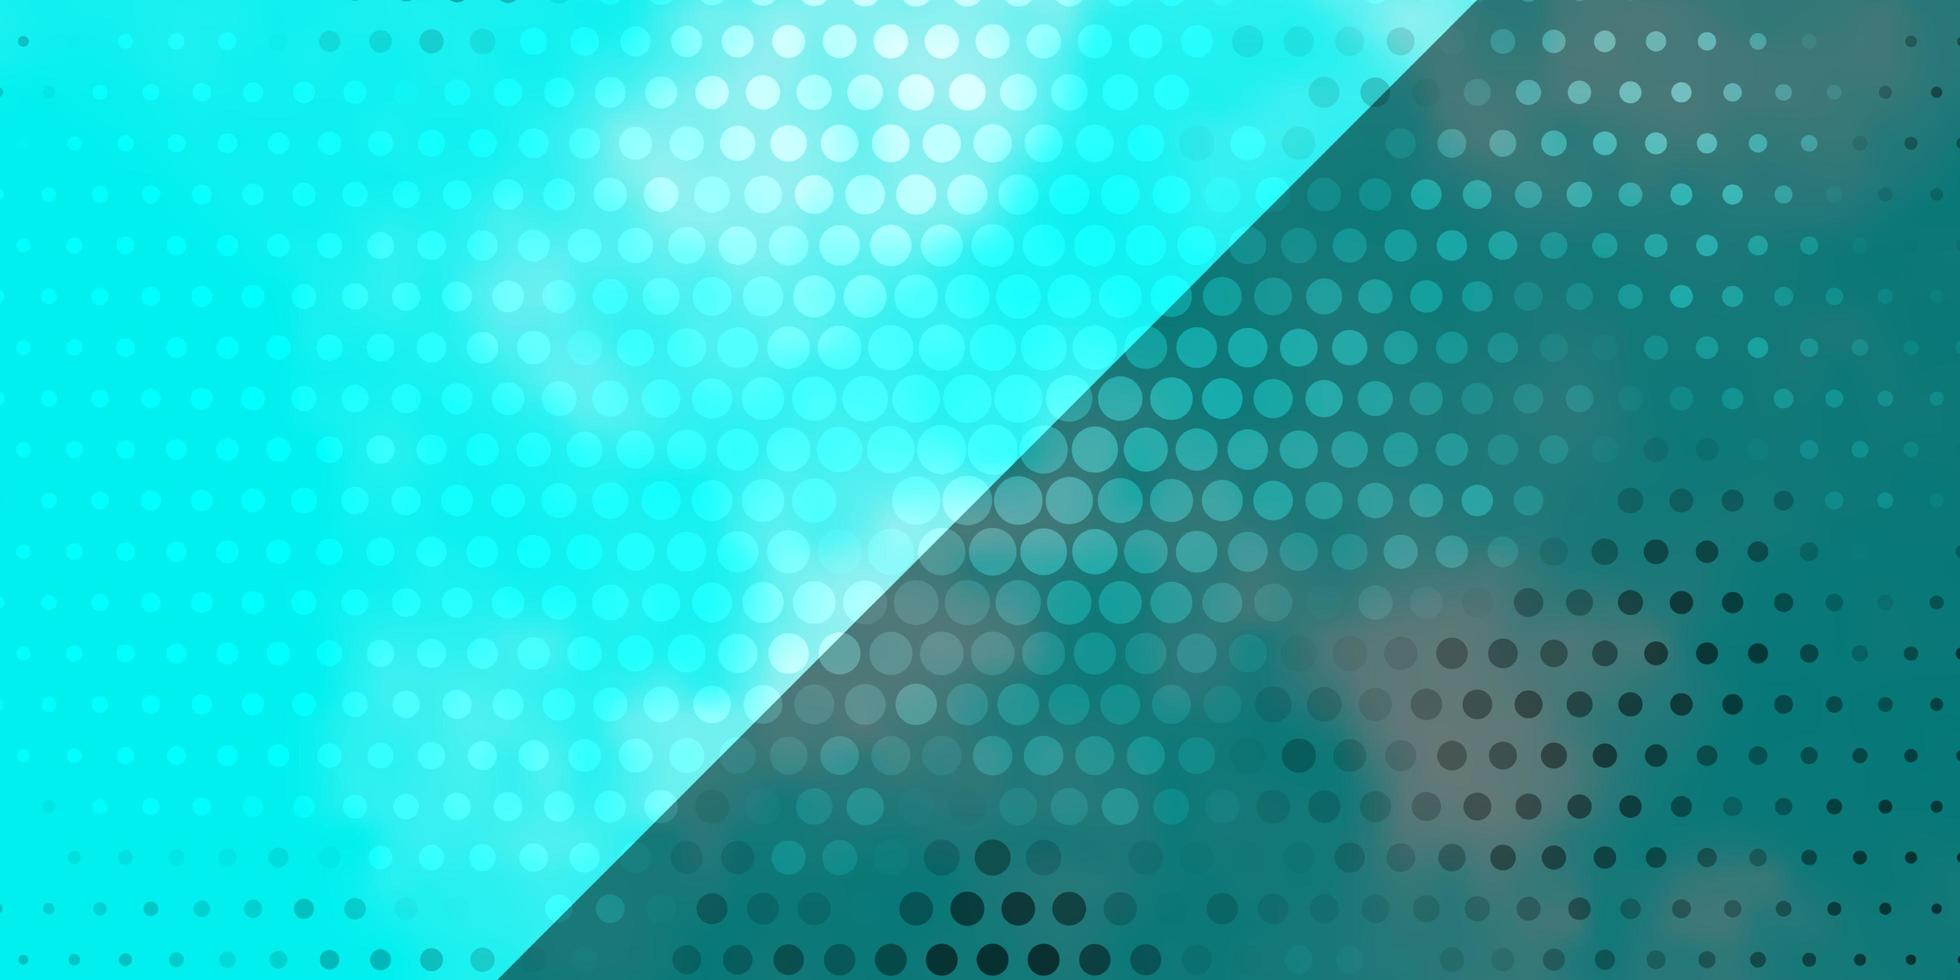 ljusblå vektor bakgrund med cirklar abstrakt dekorativ design i tonad stil med bubblor mönster för tapeter gardiner